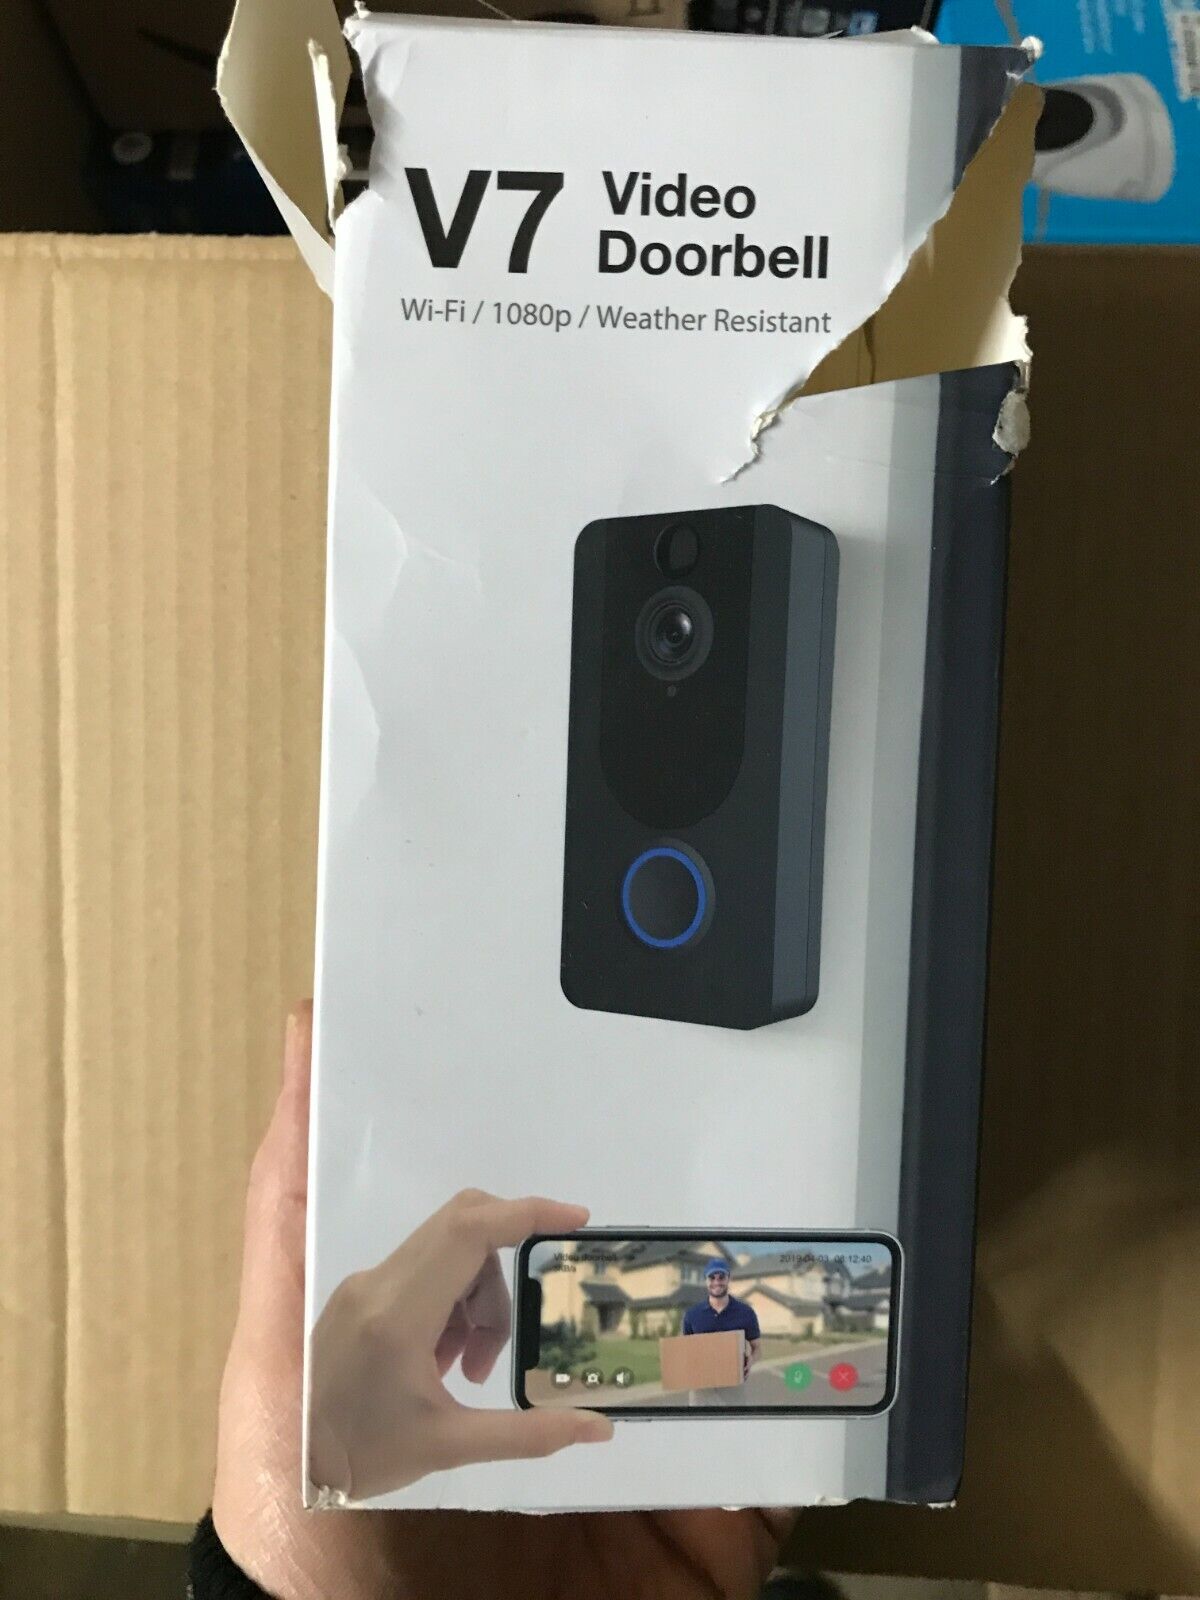 Wireless-WiFi-DoorBell-Smart-Video-Phone-Tuerklingel-Door-Bell-Secure-Camera-184534332598-3